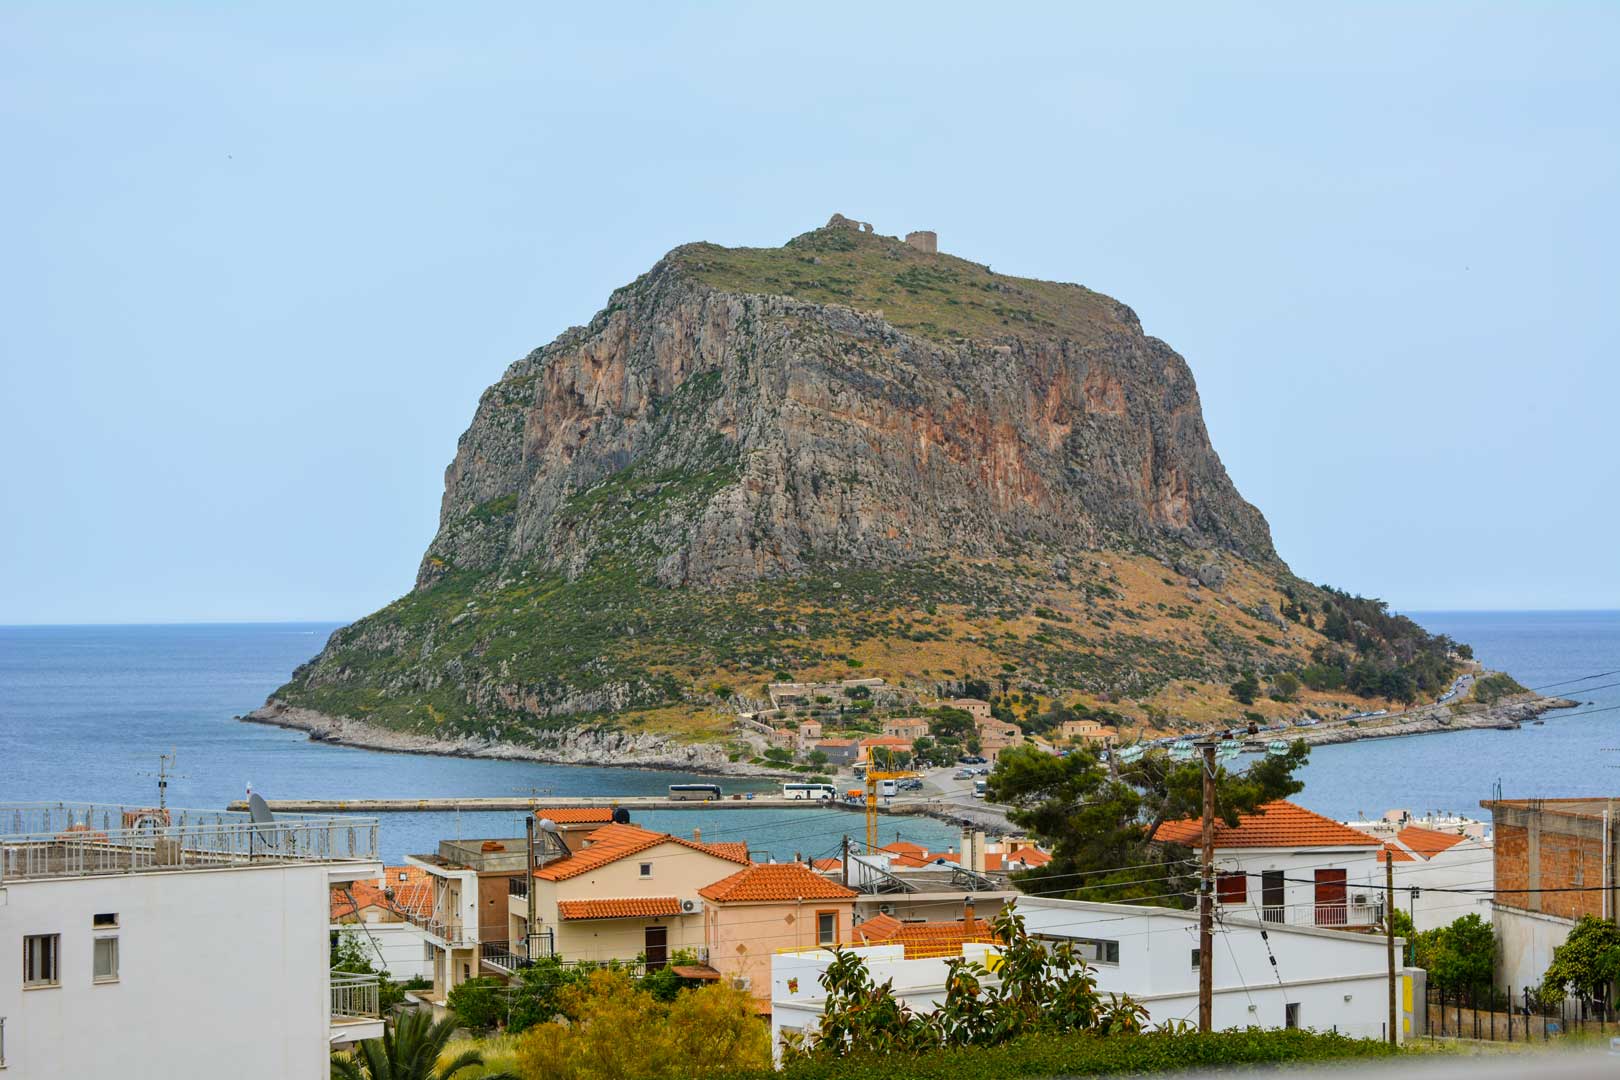 θέα στο βράχο της Μονεμβασιάς travelshare.gr